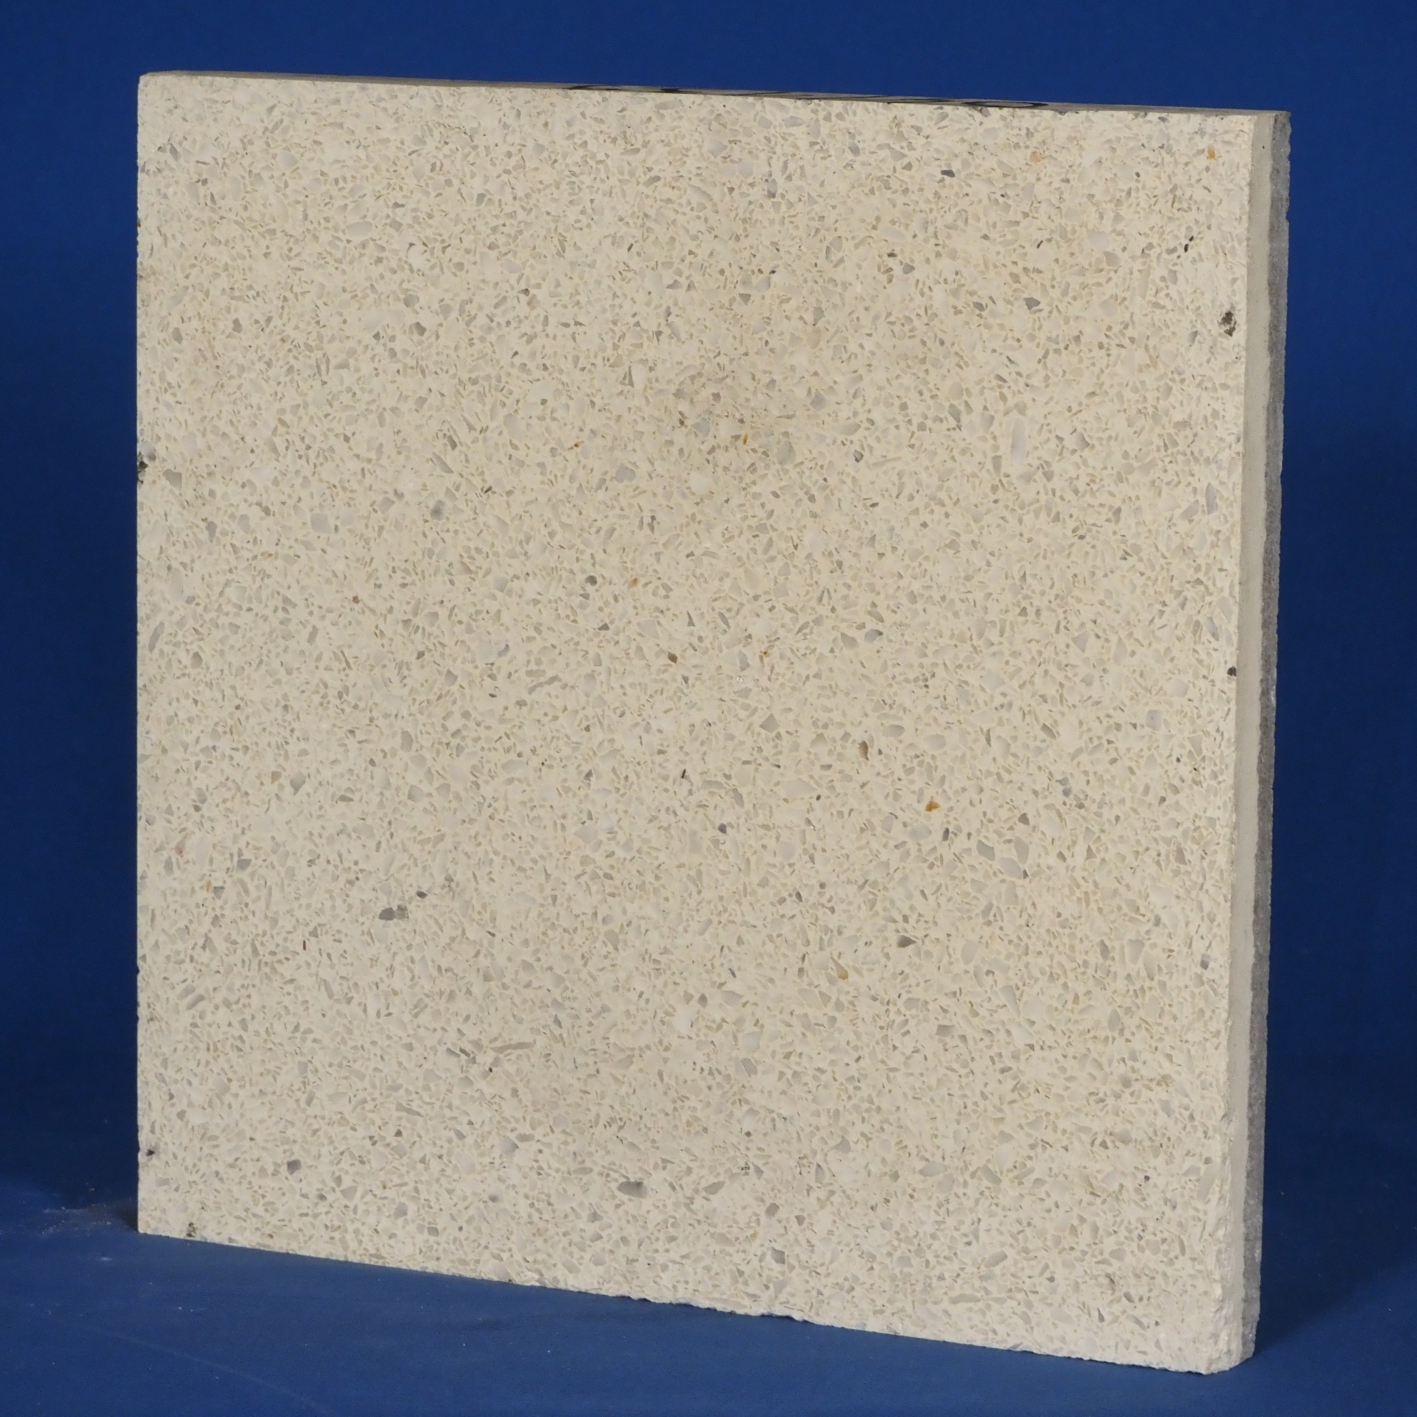 Terrazzo 'Strevi' floor tiles (30 x 30 cm) - Sold per pallet